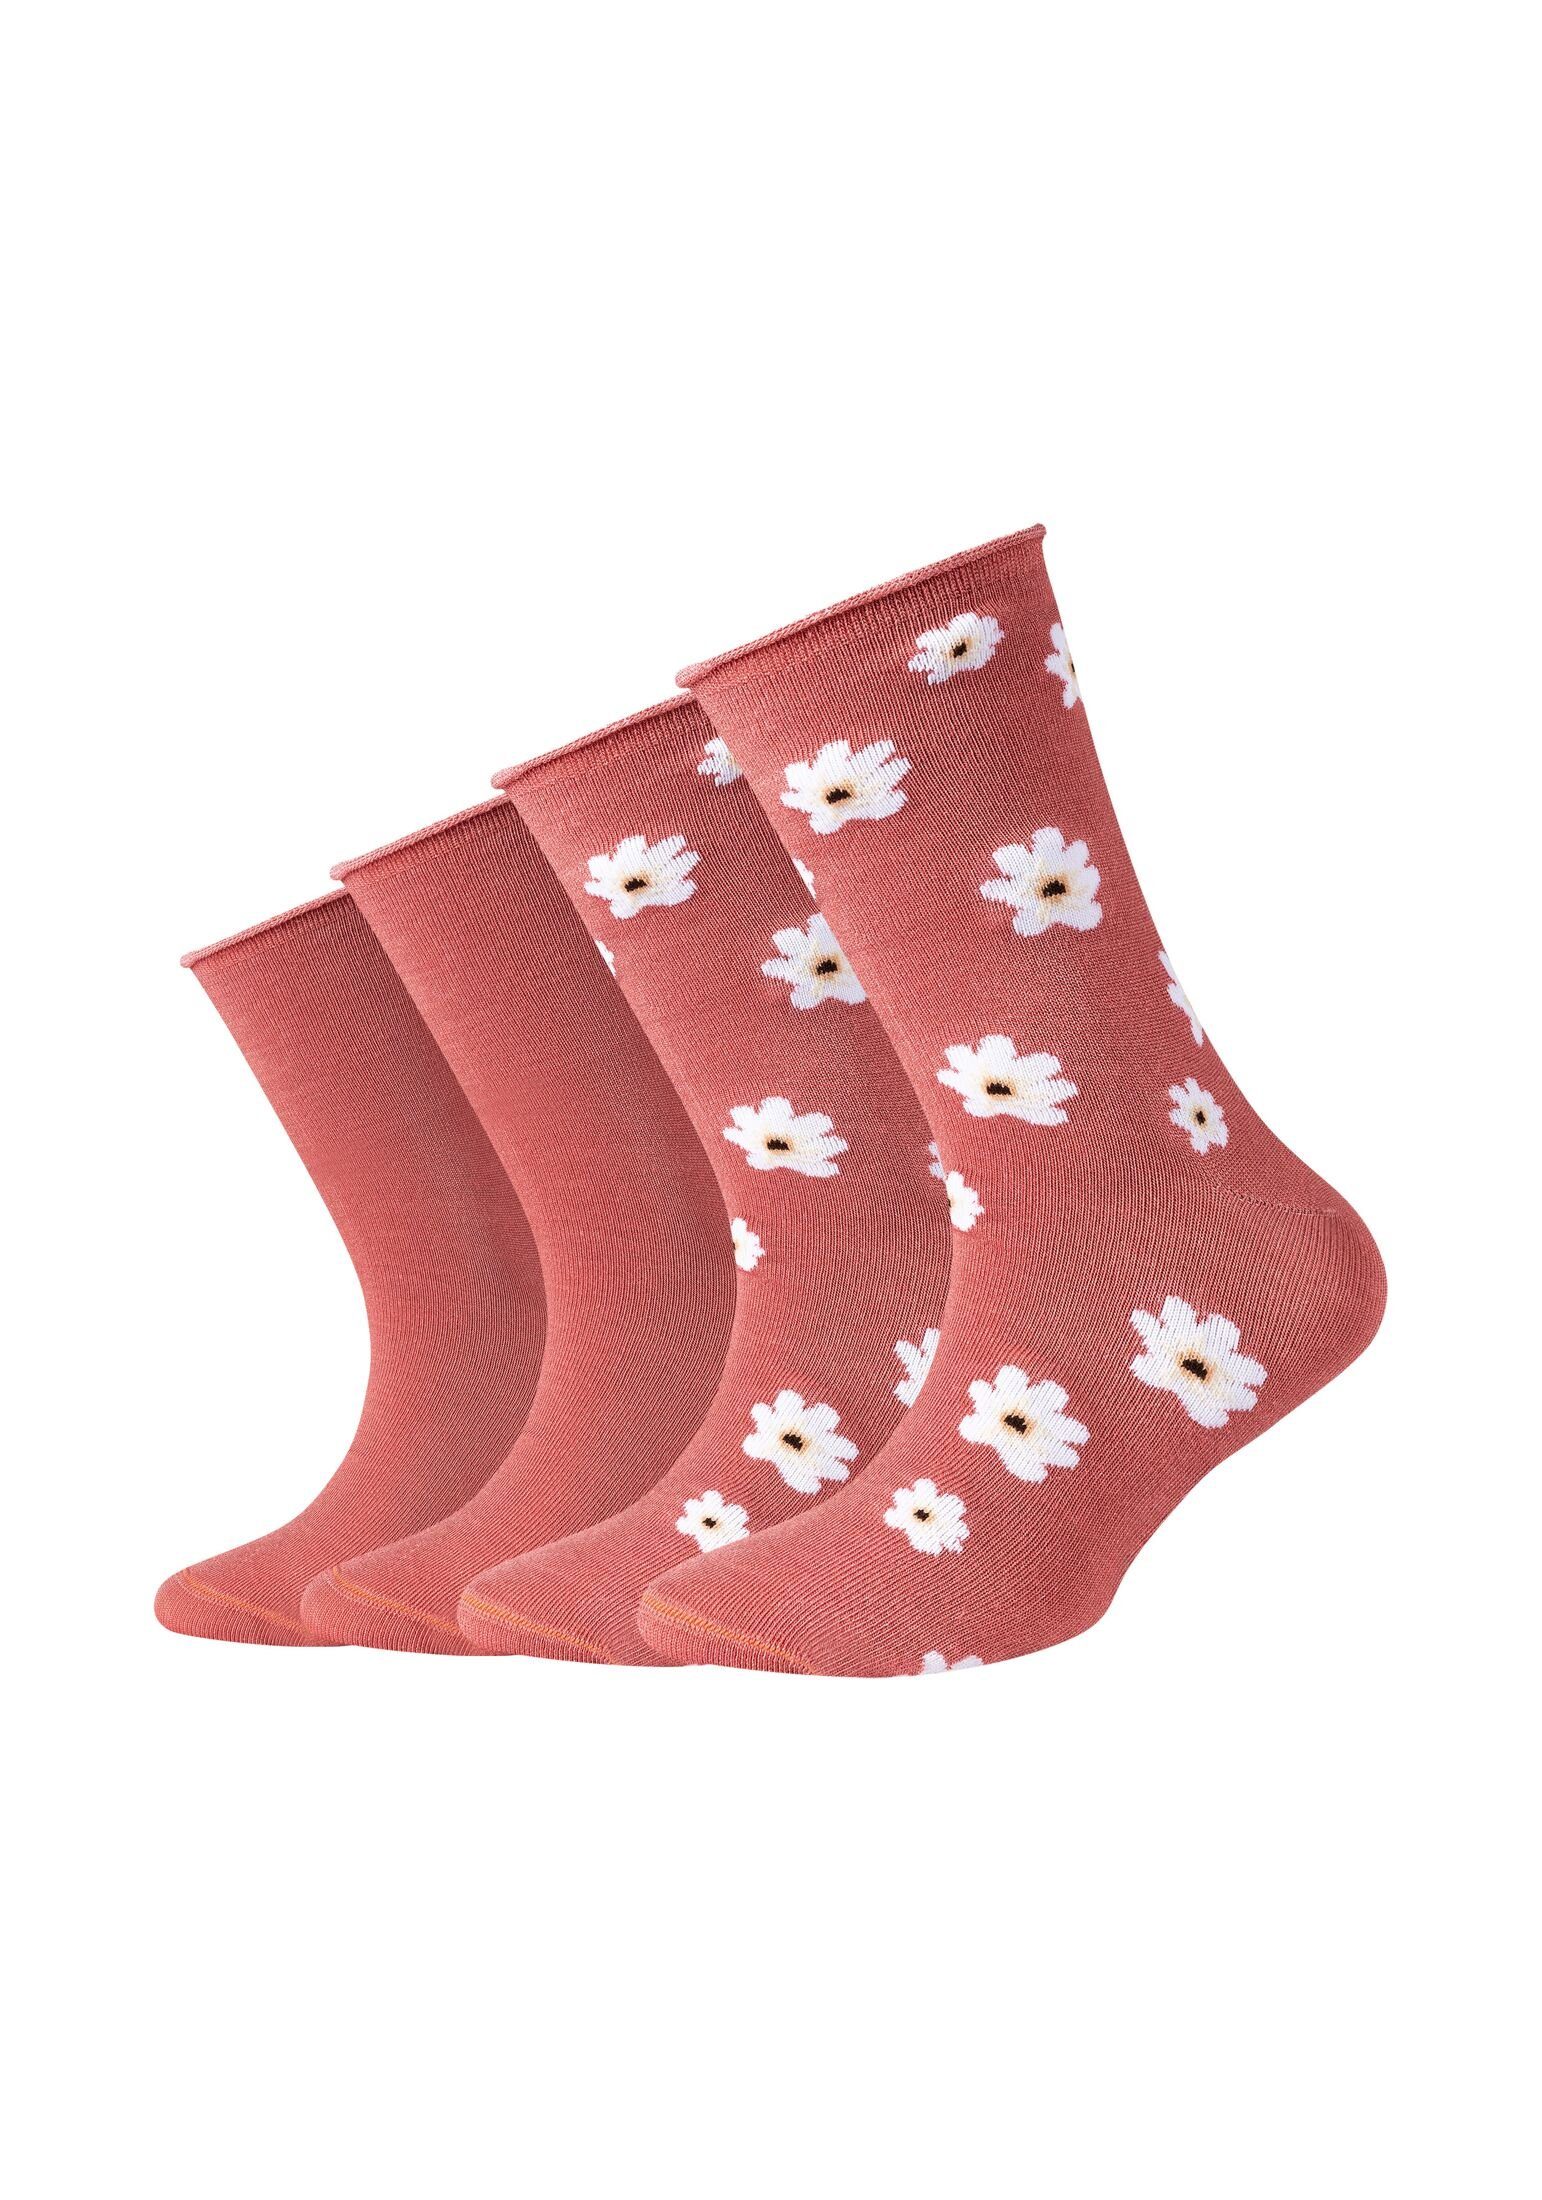 Socken Socken rose s.Oliver faded Pack 4er